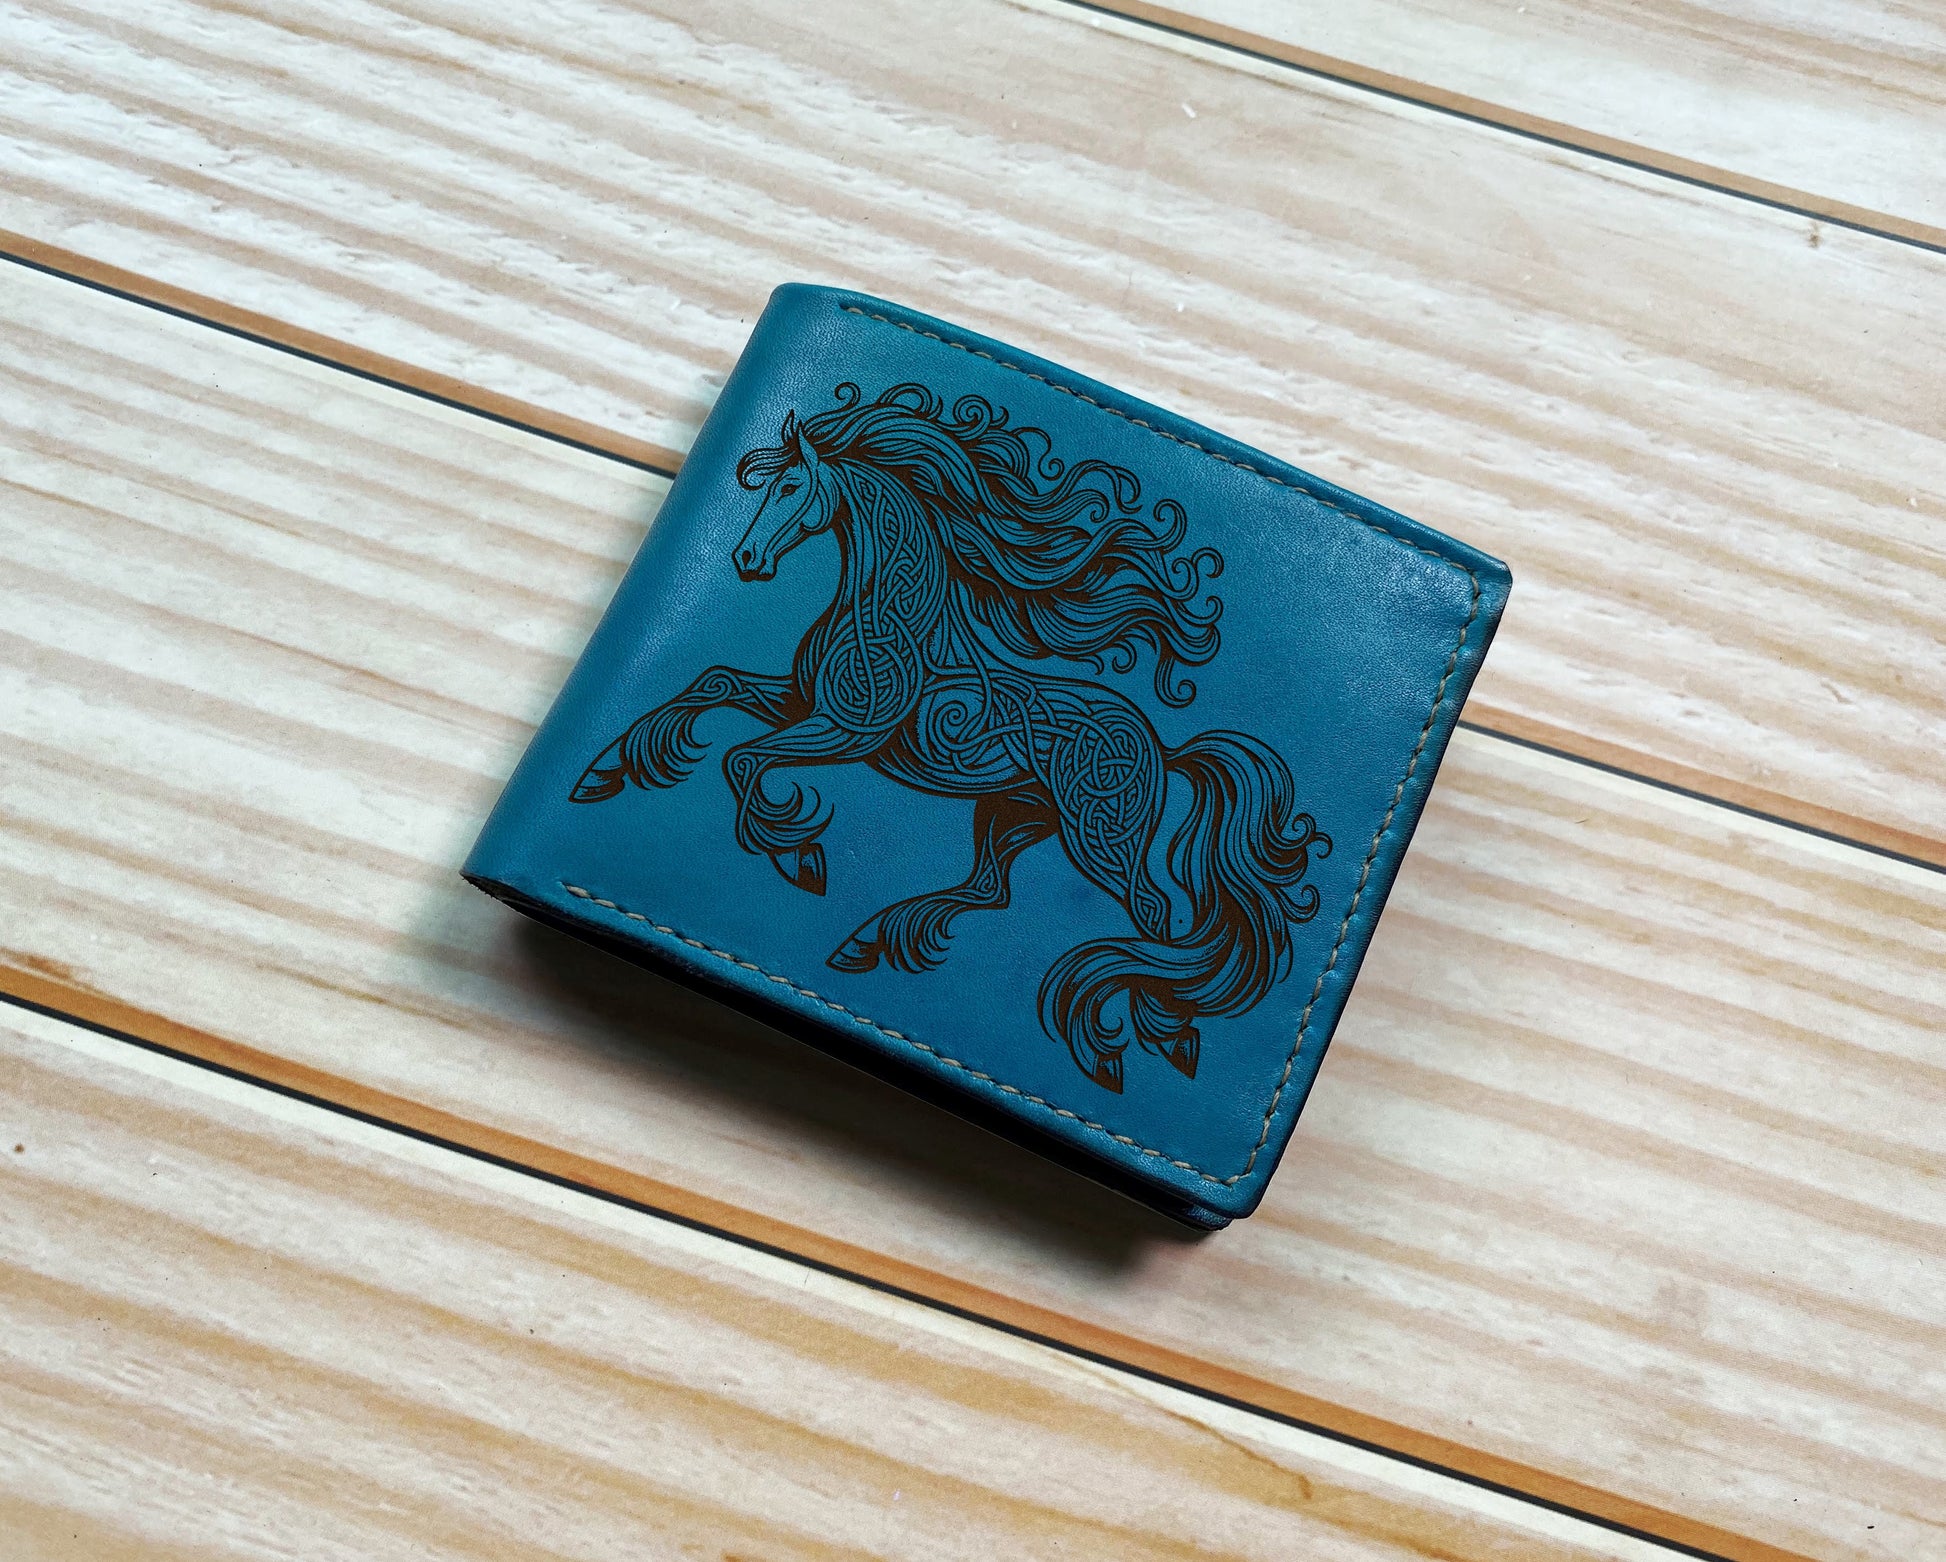 Custom leather gift for men, Celtic pattern leather wallet, horse gift for boyfriend, wallet for husband, horse art leather anniversary gift